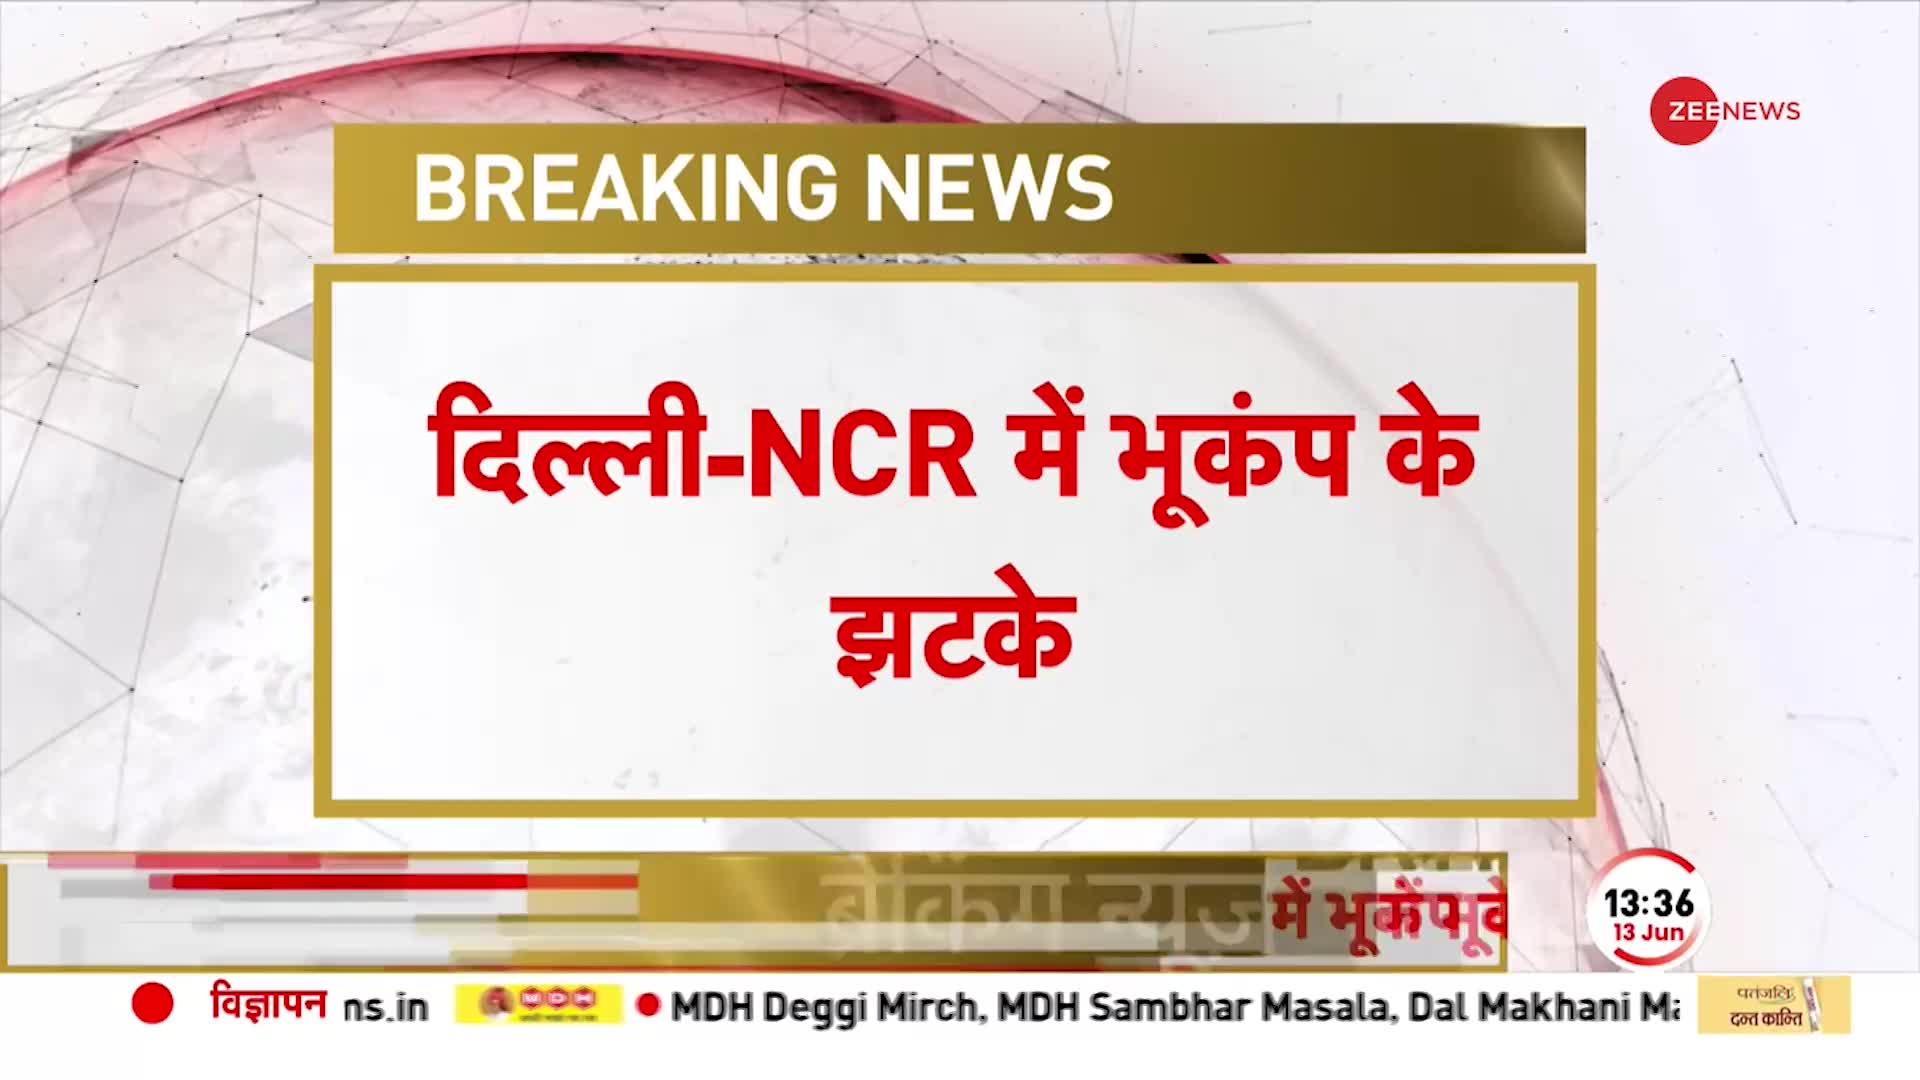 BREAKING NEWS: दिल्ली-एनसीआर में महसूस किए गए भूकंप के झटके, करीब 20 सेकंड तक आया